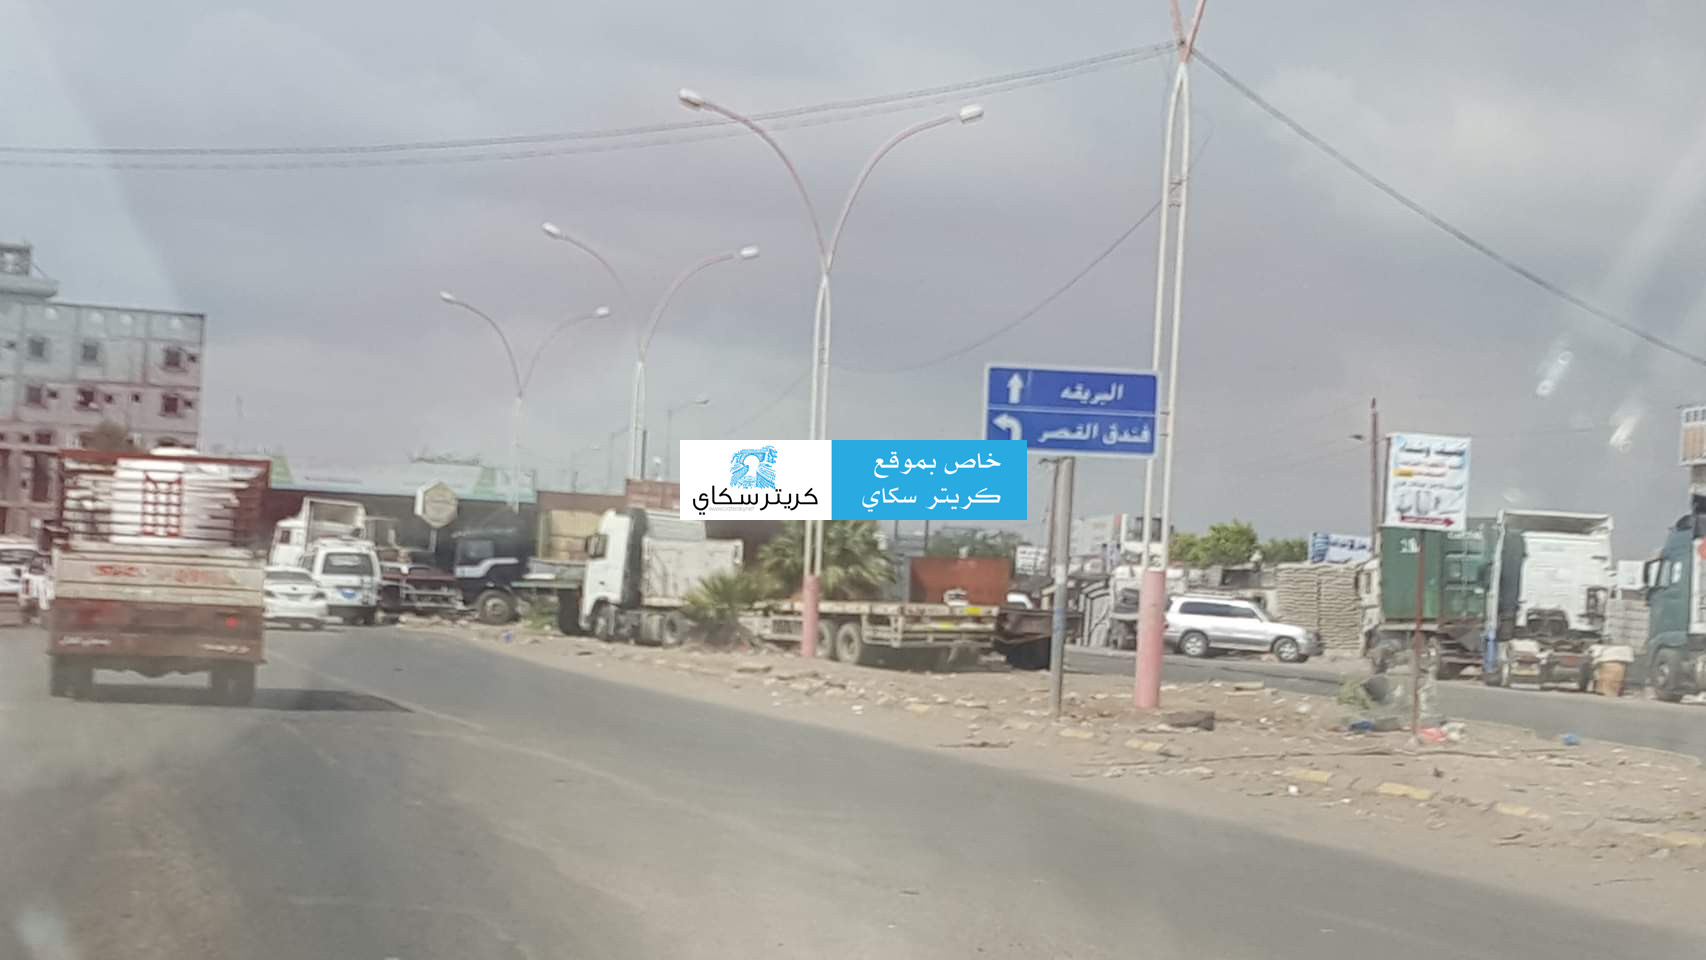 مكاتب الصحة في عدن ترفض تدخلات الوزارة وتوضح أسباب تدهور الوضع الصحي(وثائق)